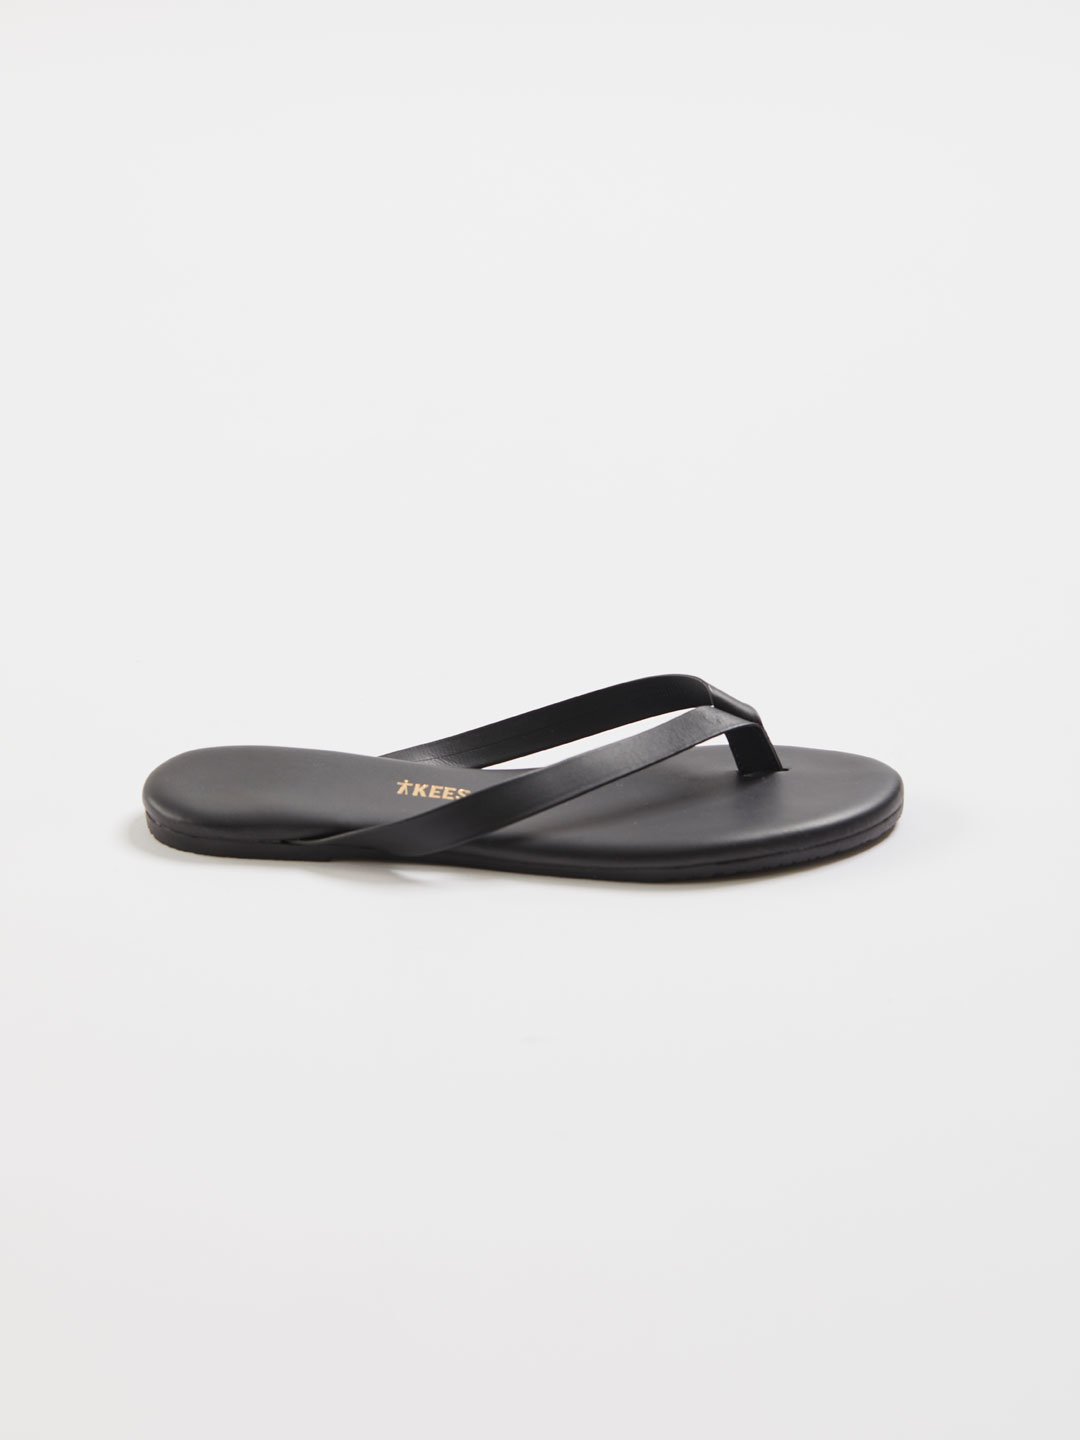 BOYFRIEND Bold Flip Flop Sandals - Taro/Black